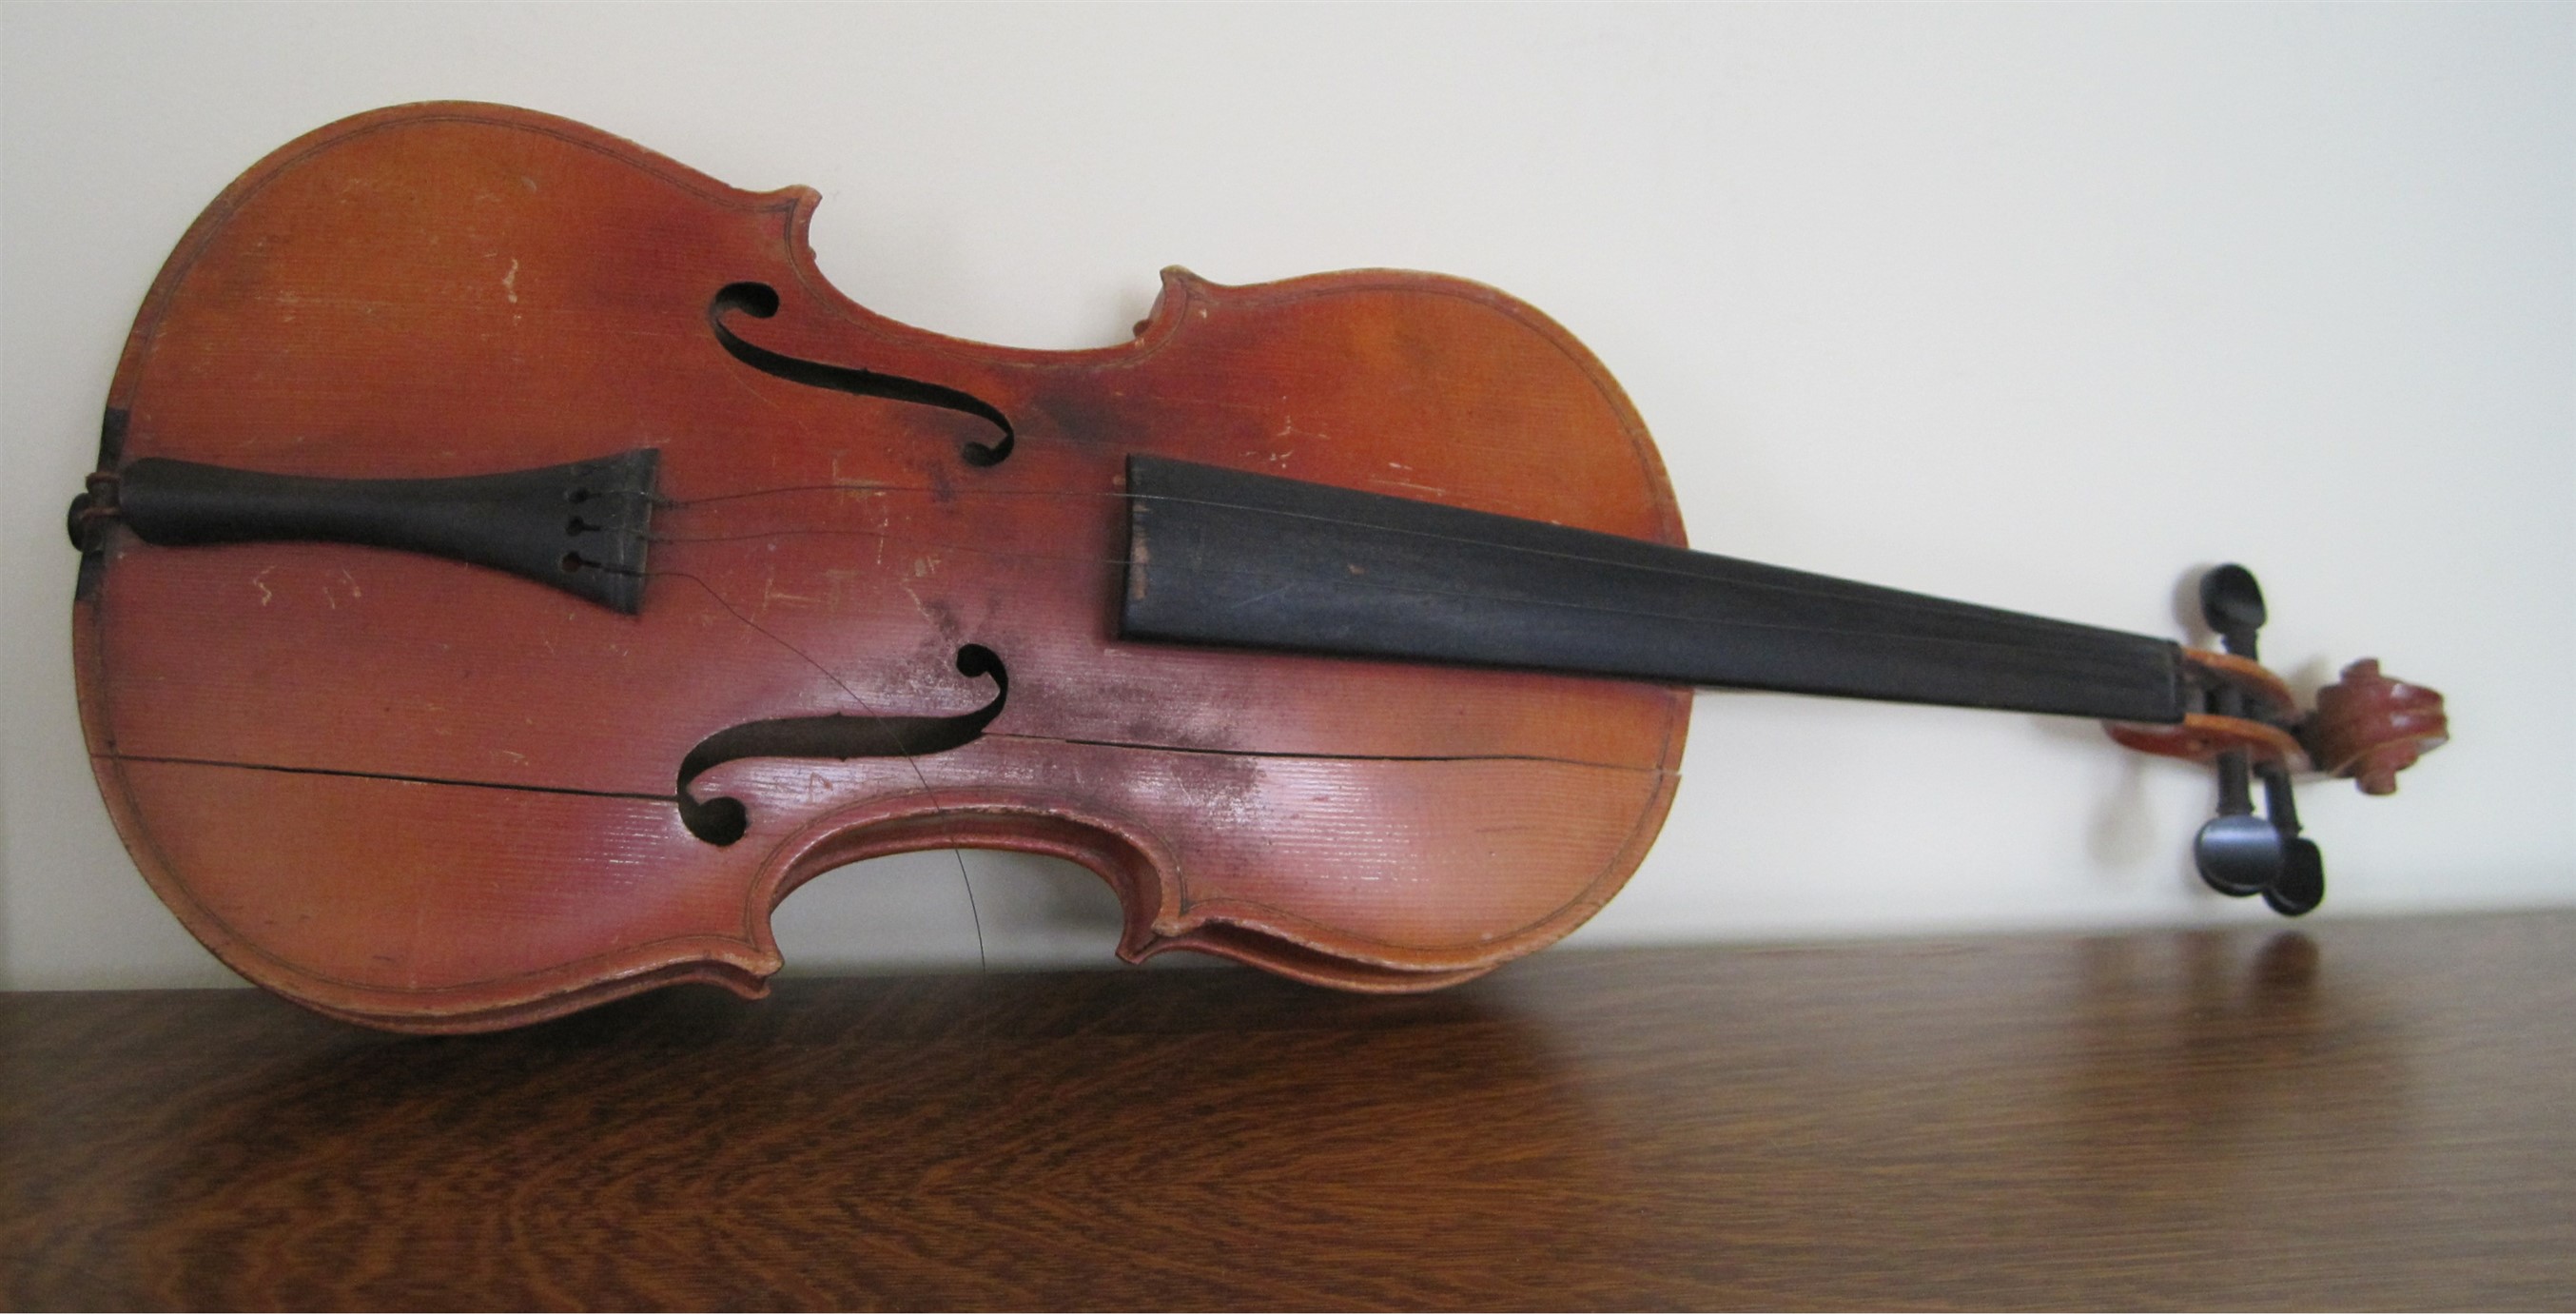 Broken Violin lying on its side